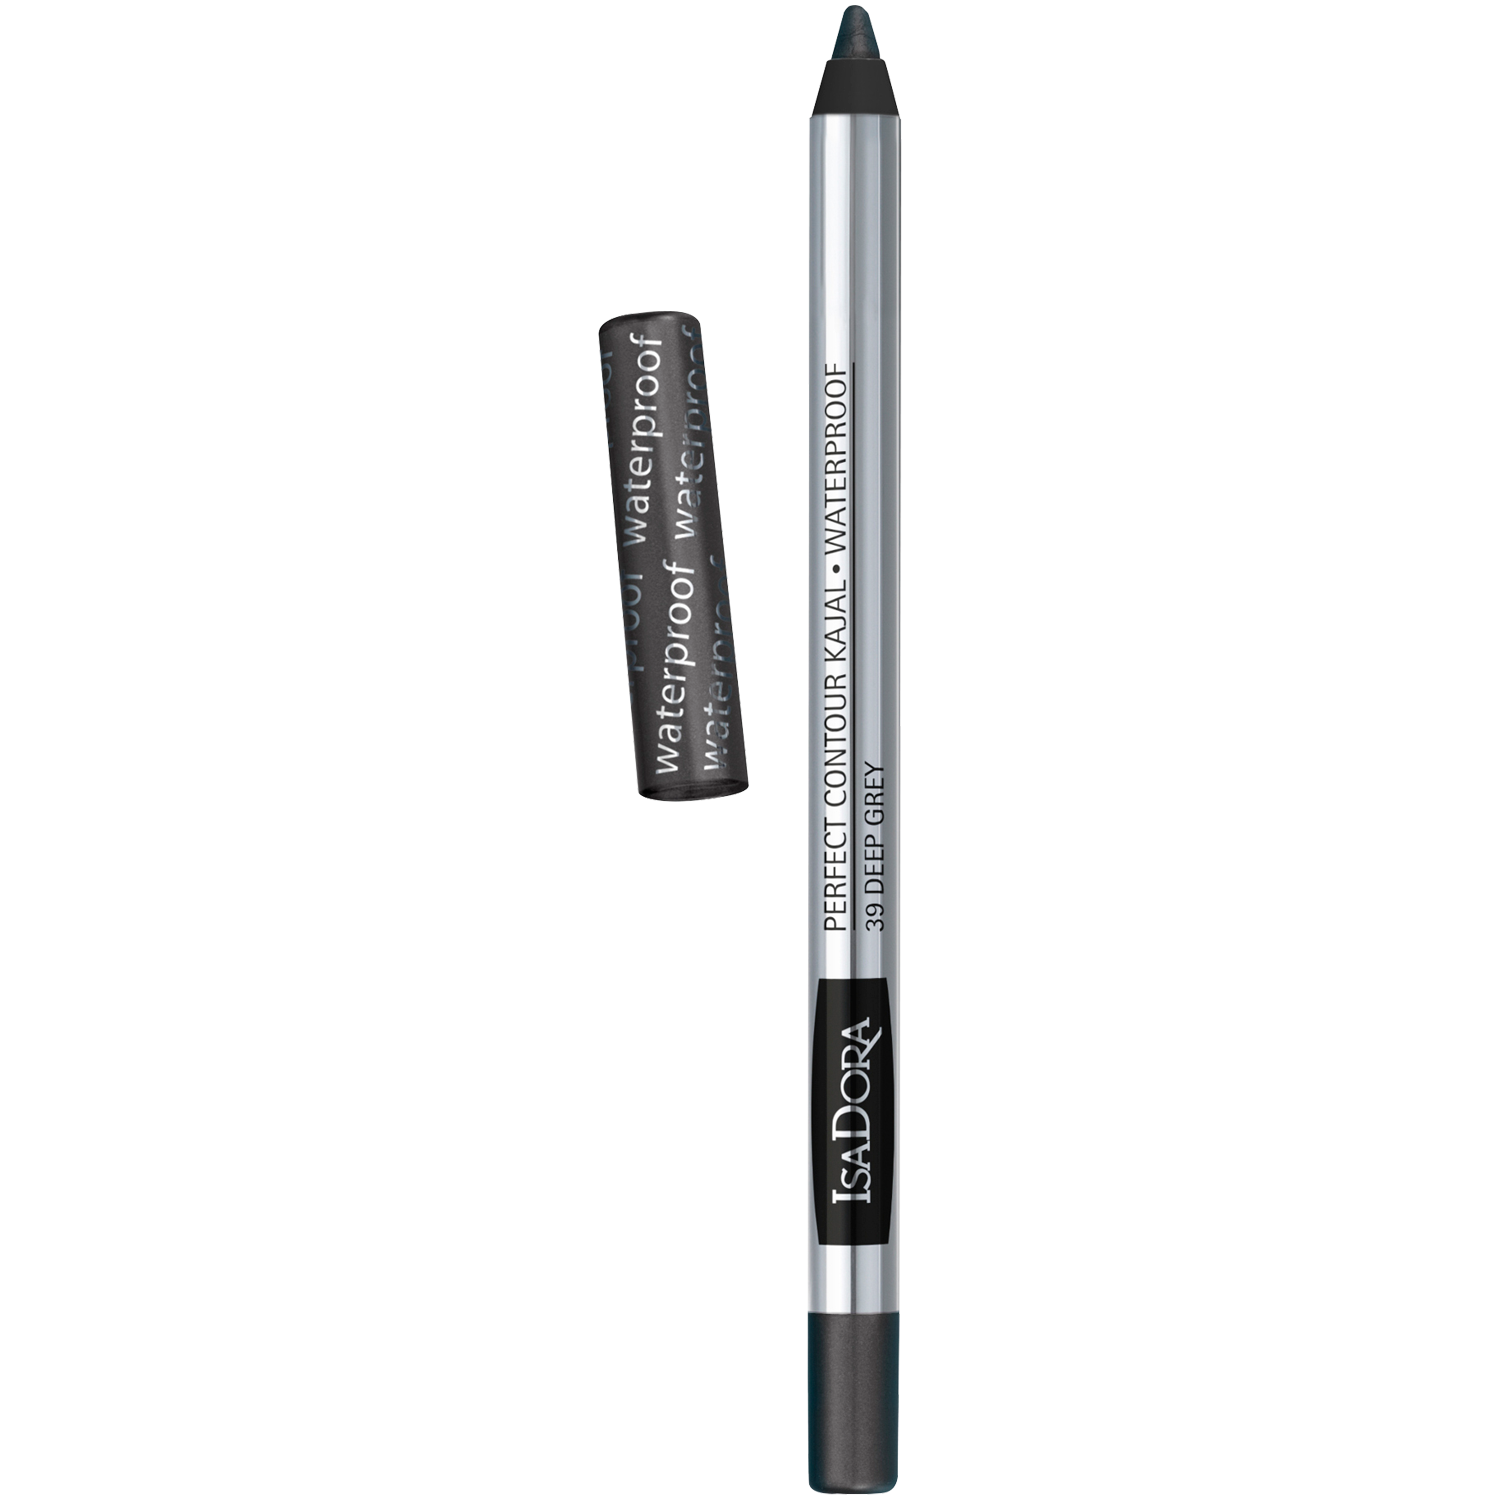 Водостойкий карандаш для глаз 39 темно-серый Isadora Kajal, 1,3 гр водостойкий карандаш для глаз 61 темно коричневый isadora kajal 1 3 гр